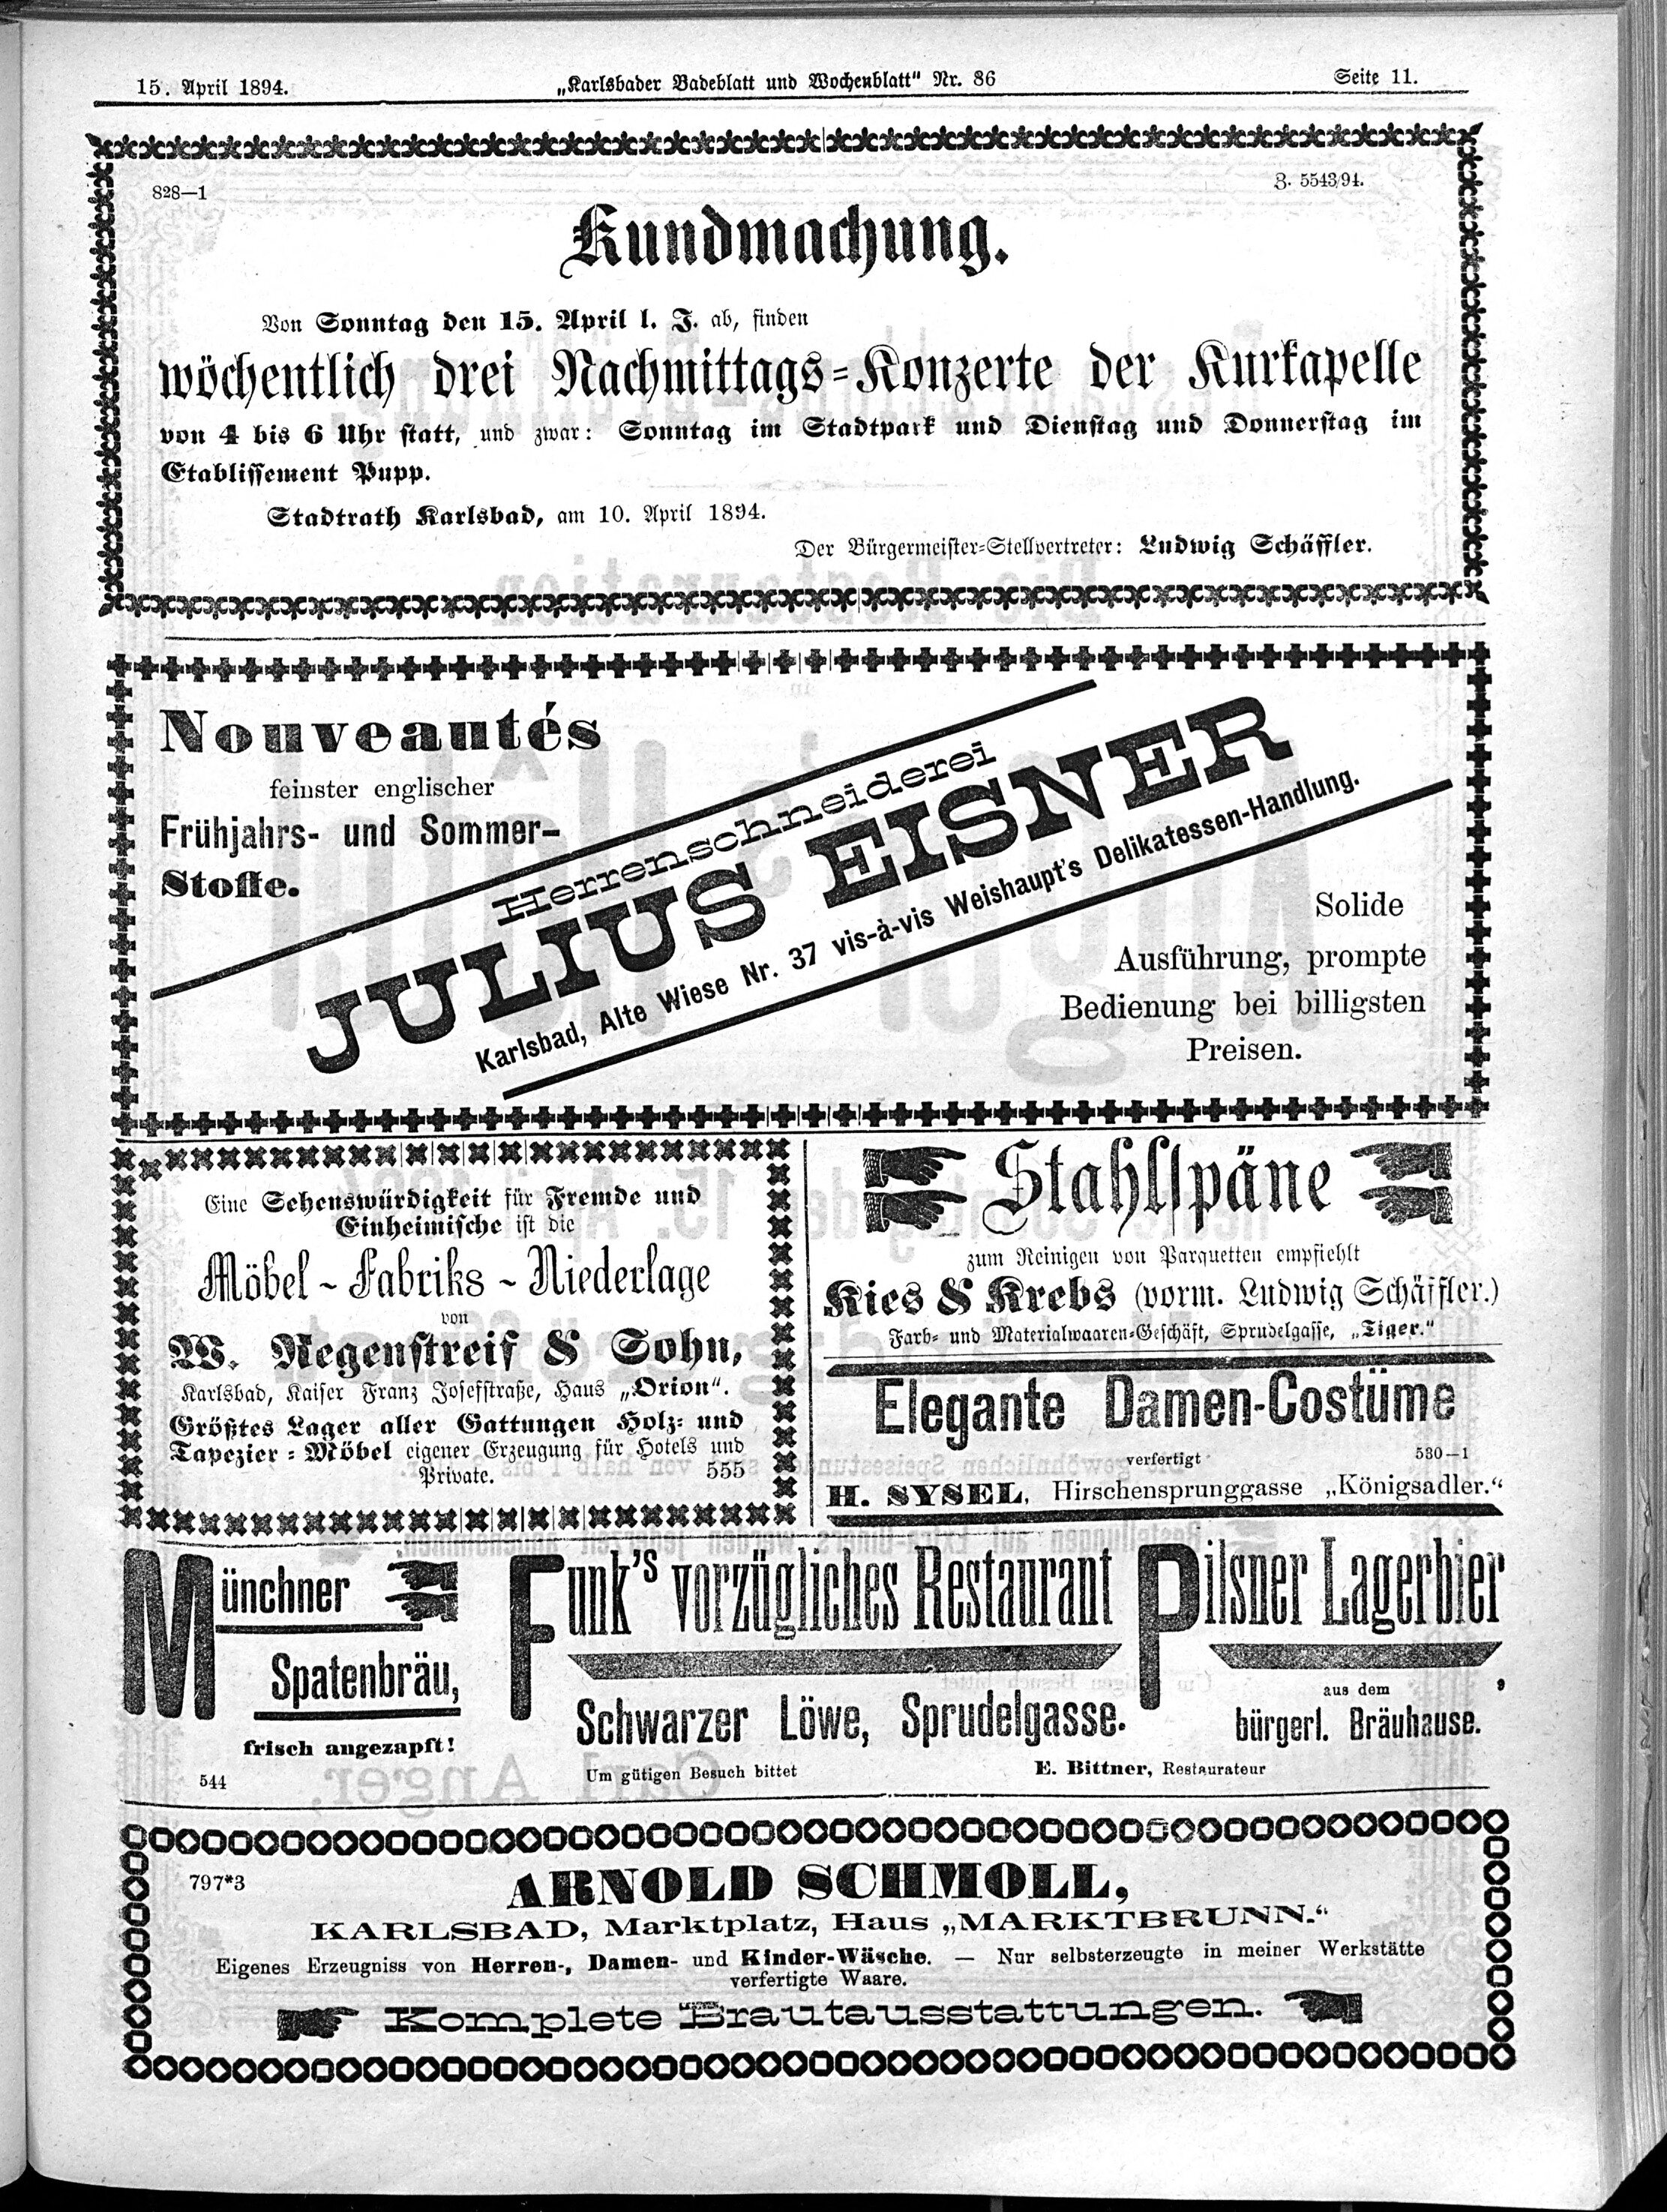 11. karlsbader-badeblatt-1894-04-15-n86_3555